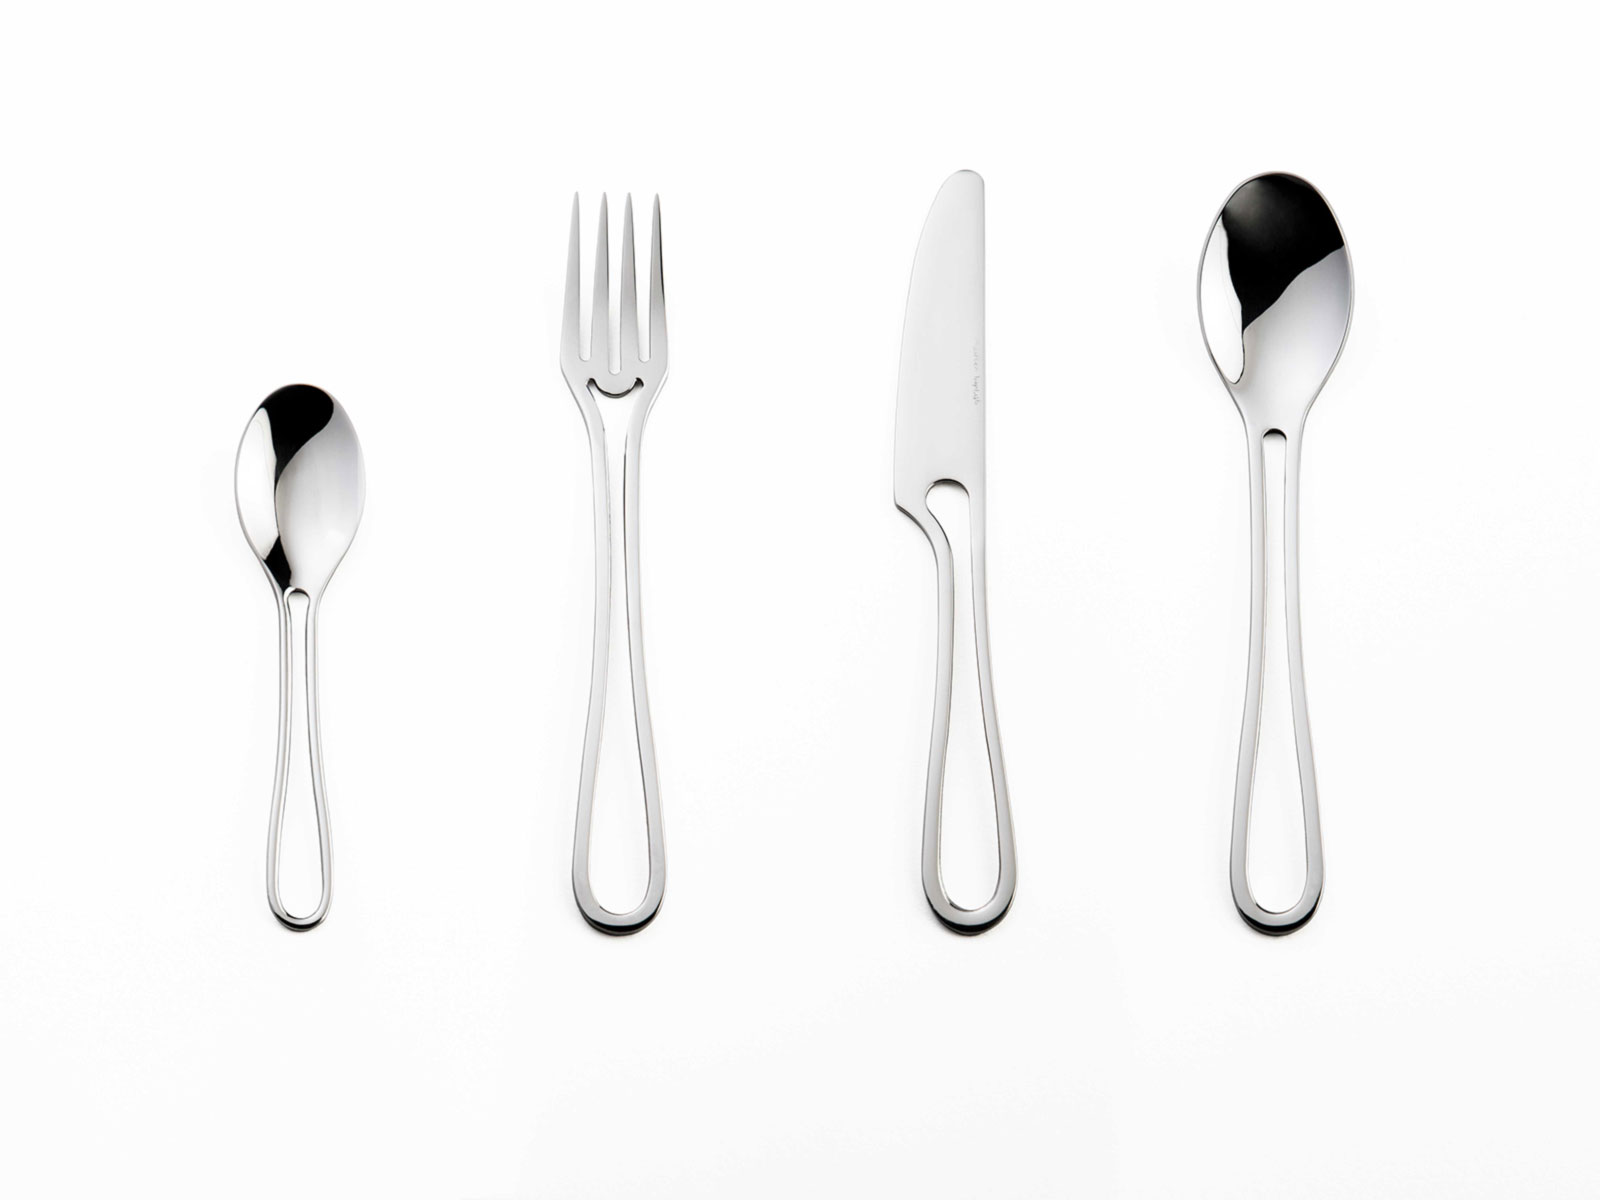 Matte or Shiny Black Flatware Set for 6, Elegant Cutlery Gift